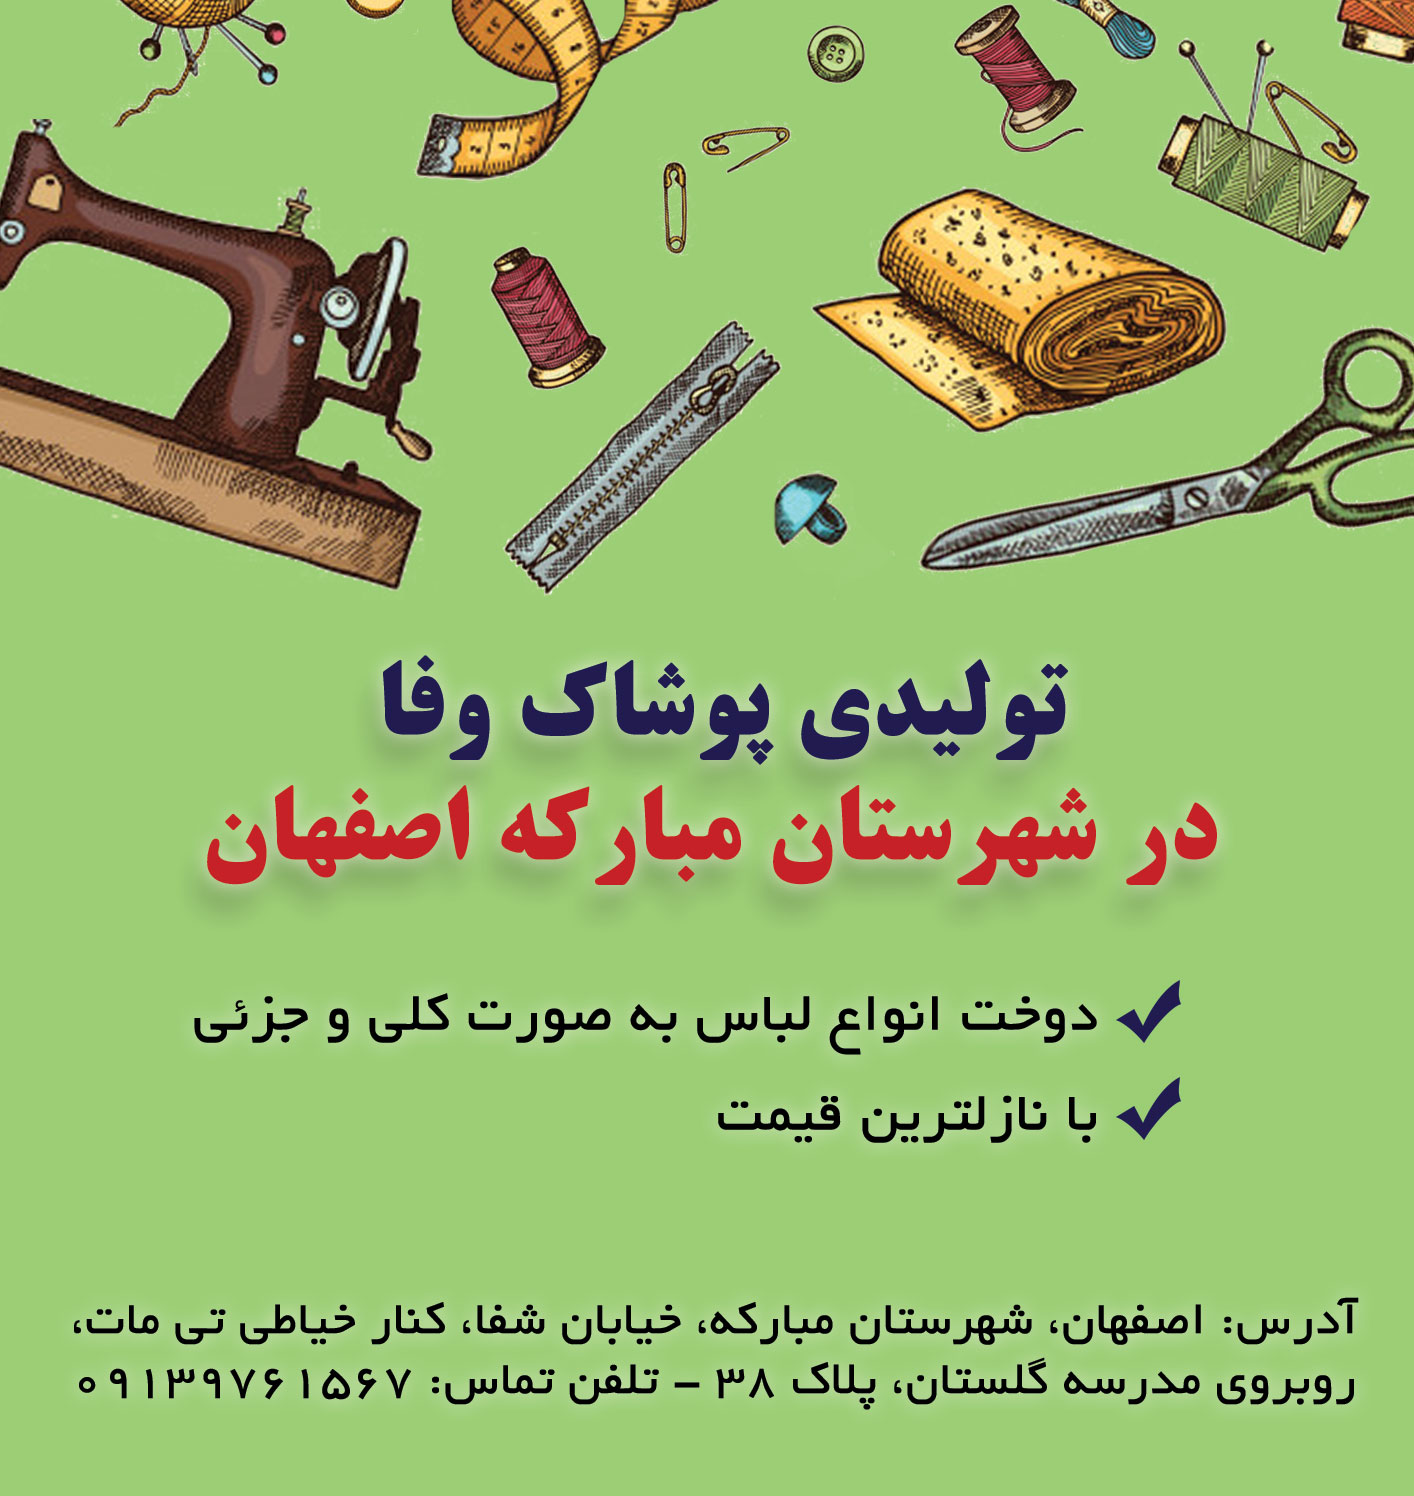 تولیدی پوشاک مبارکه اصفهان